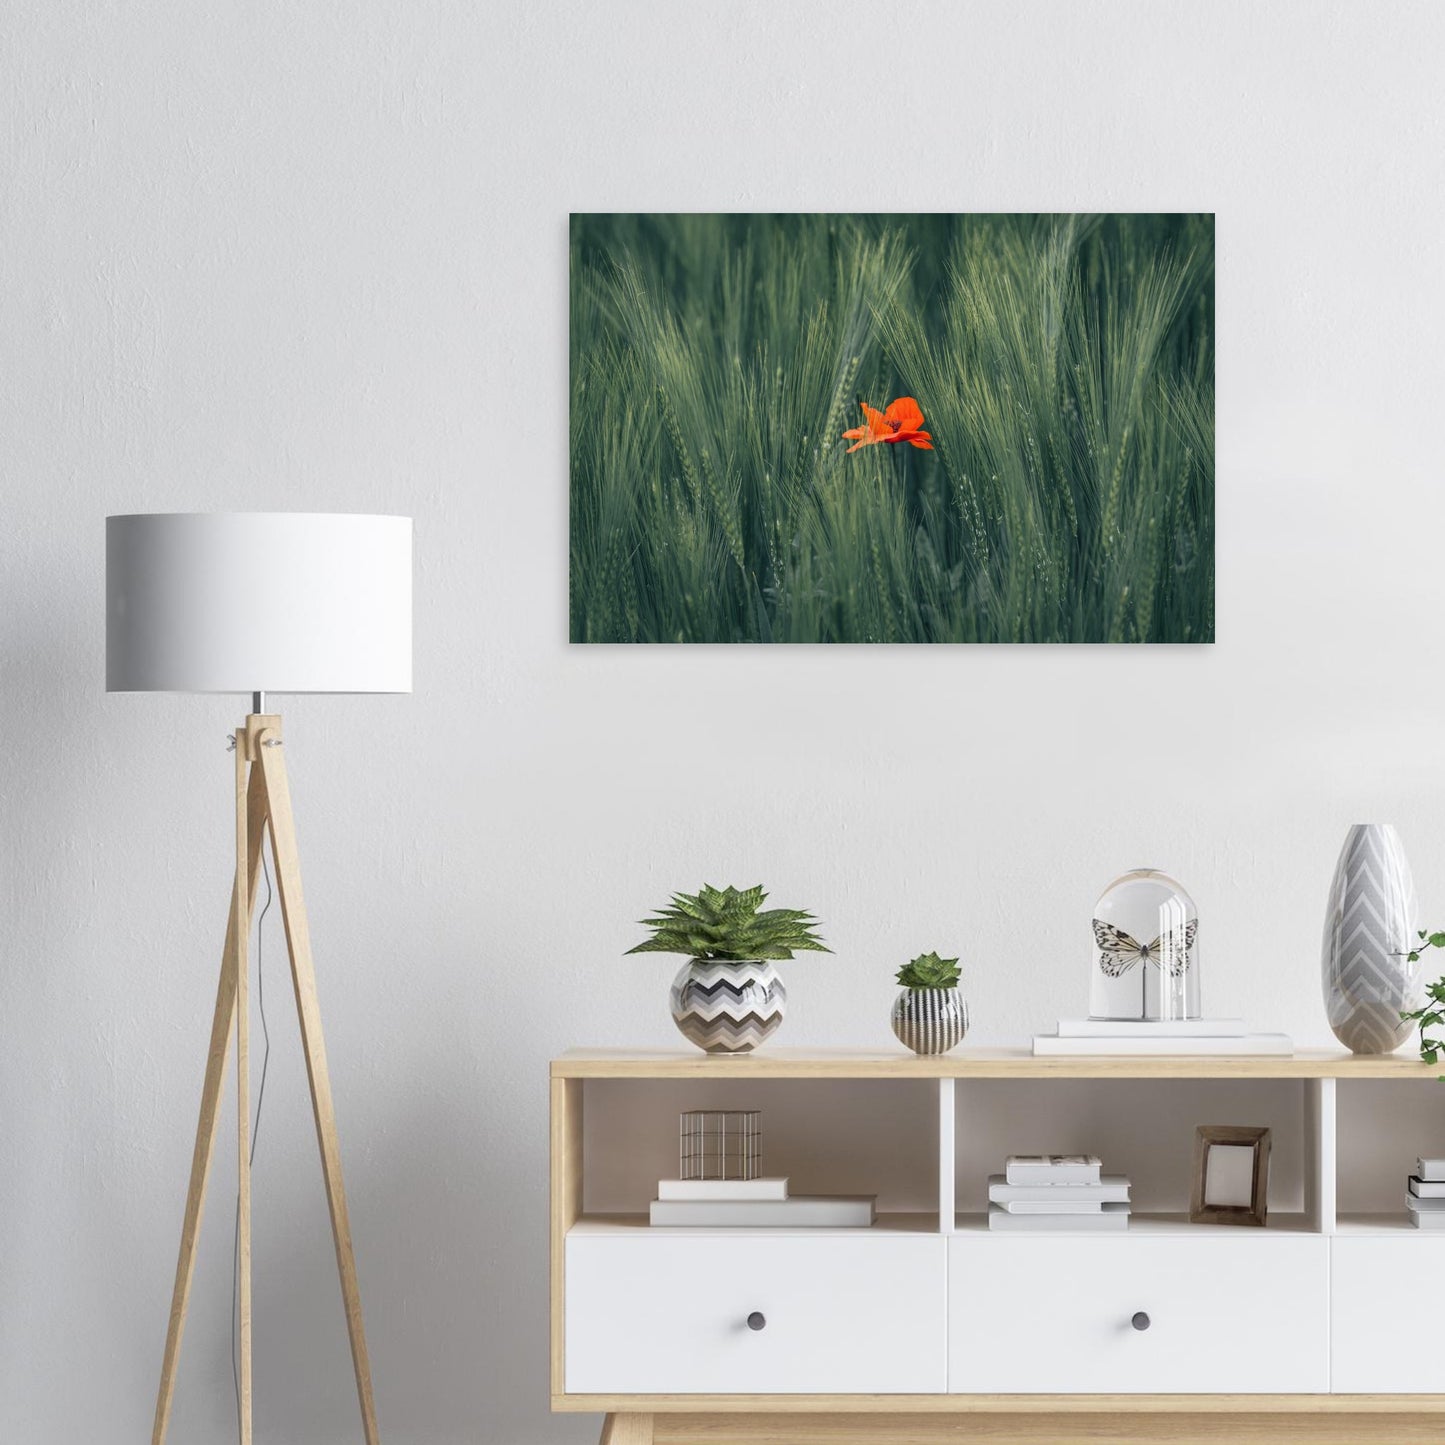 Rote Blume im Grünen Weizenfeld  - Premium Poster